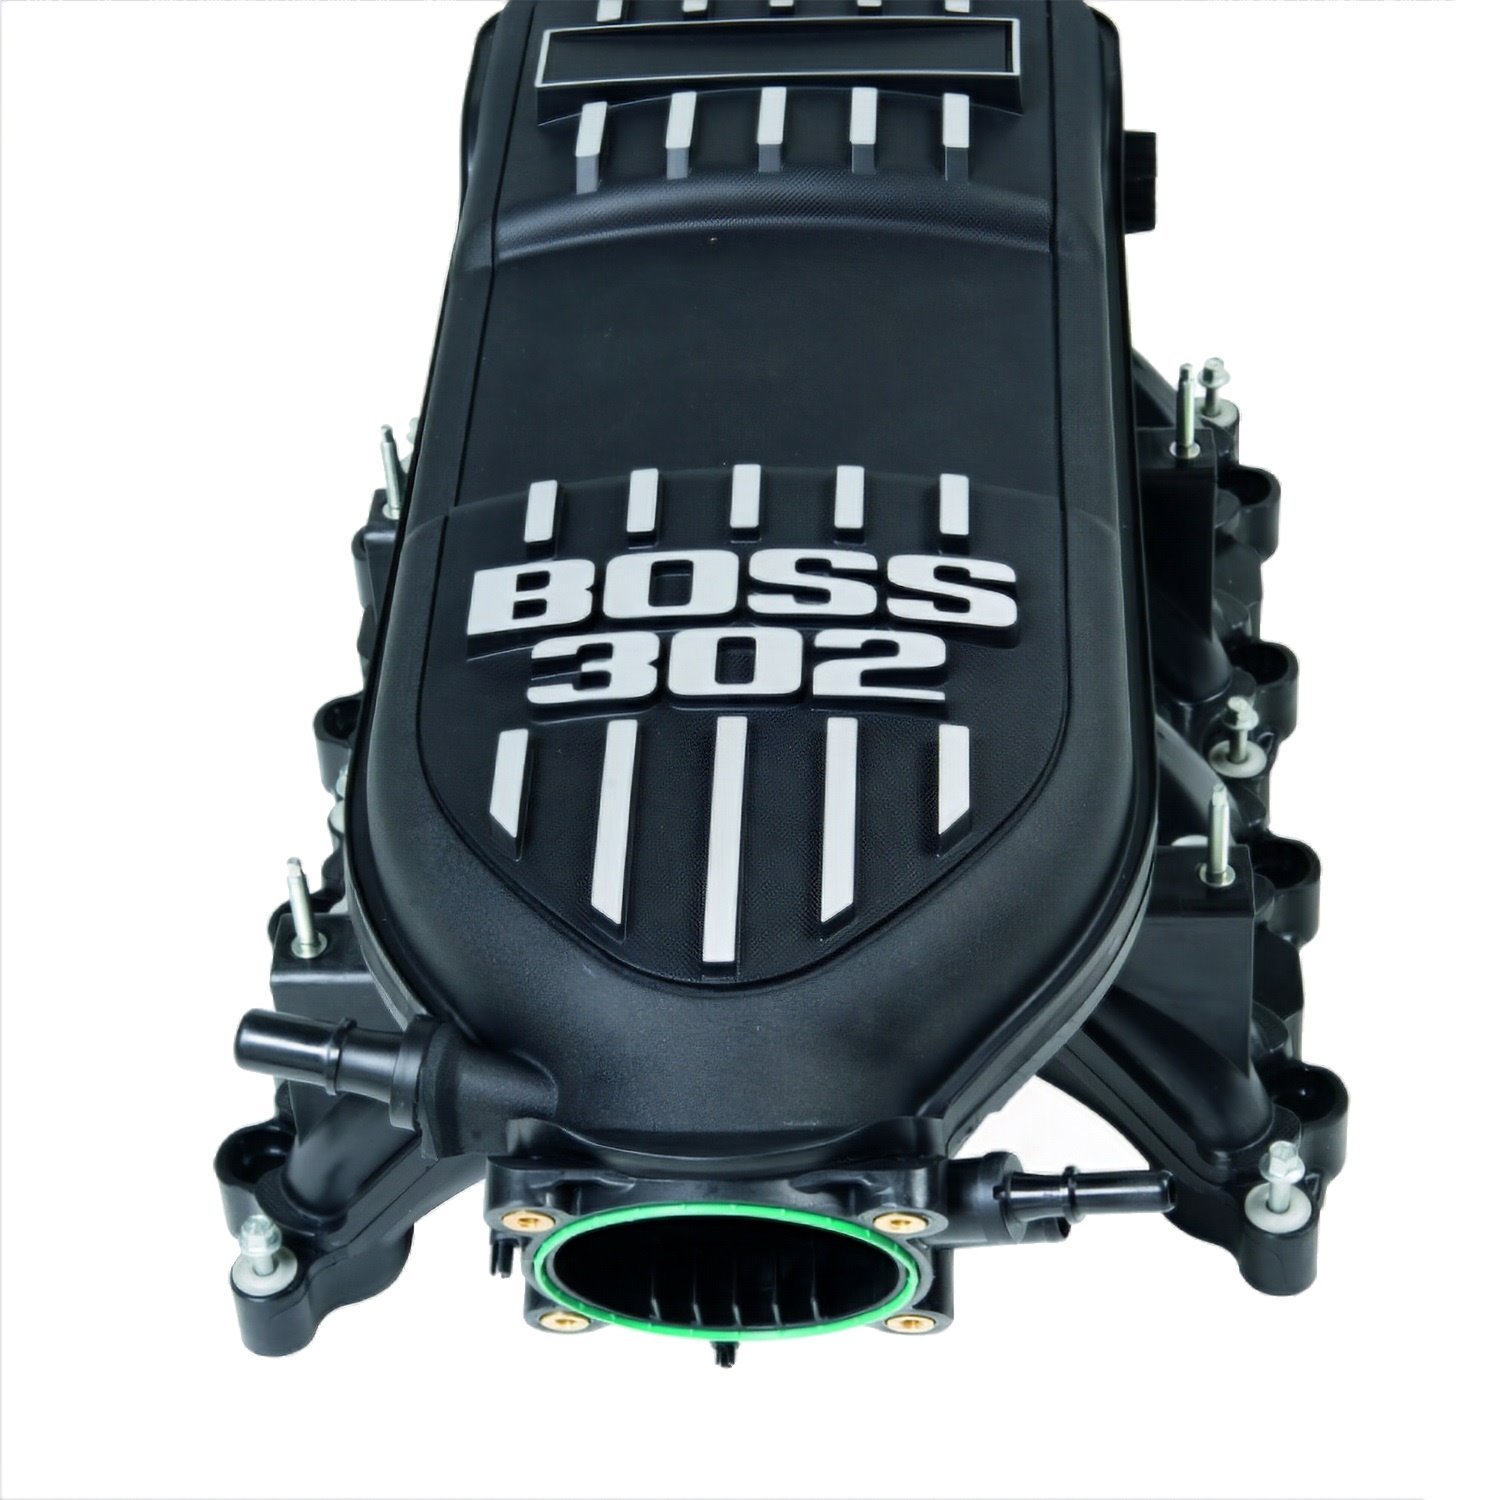 Boss 302 Intake Manifold 2011-14 Mustang 5.0L 4V